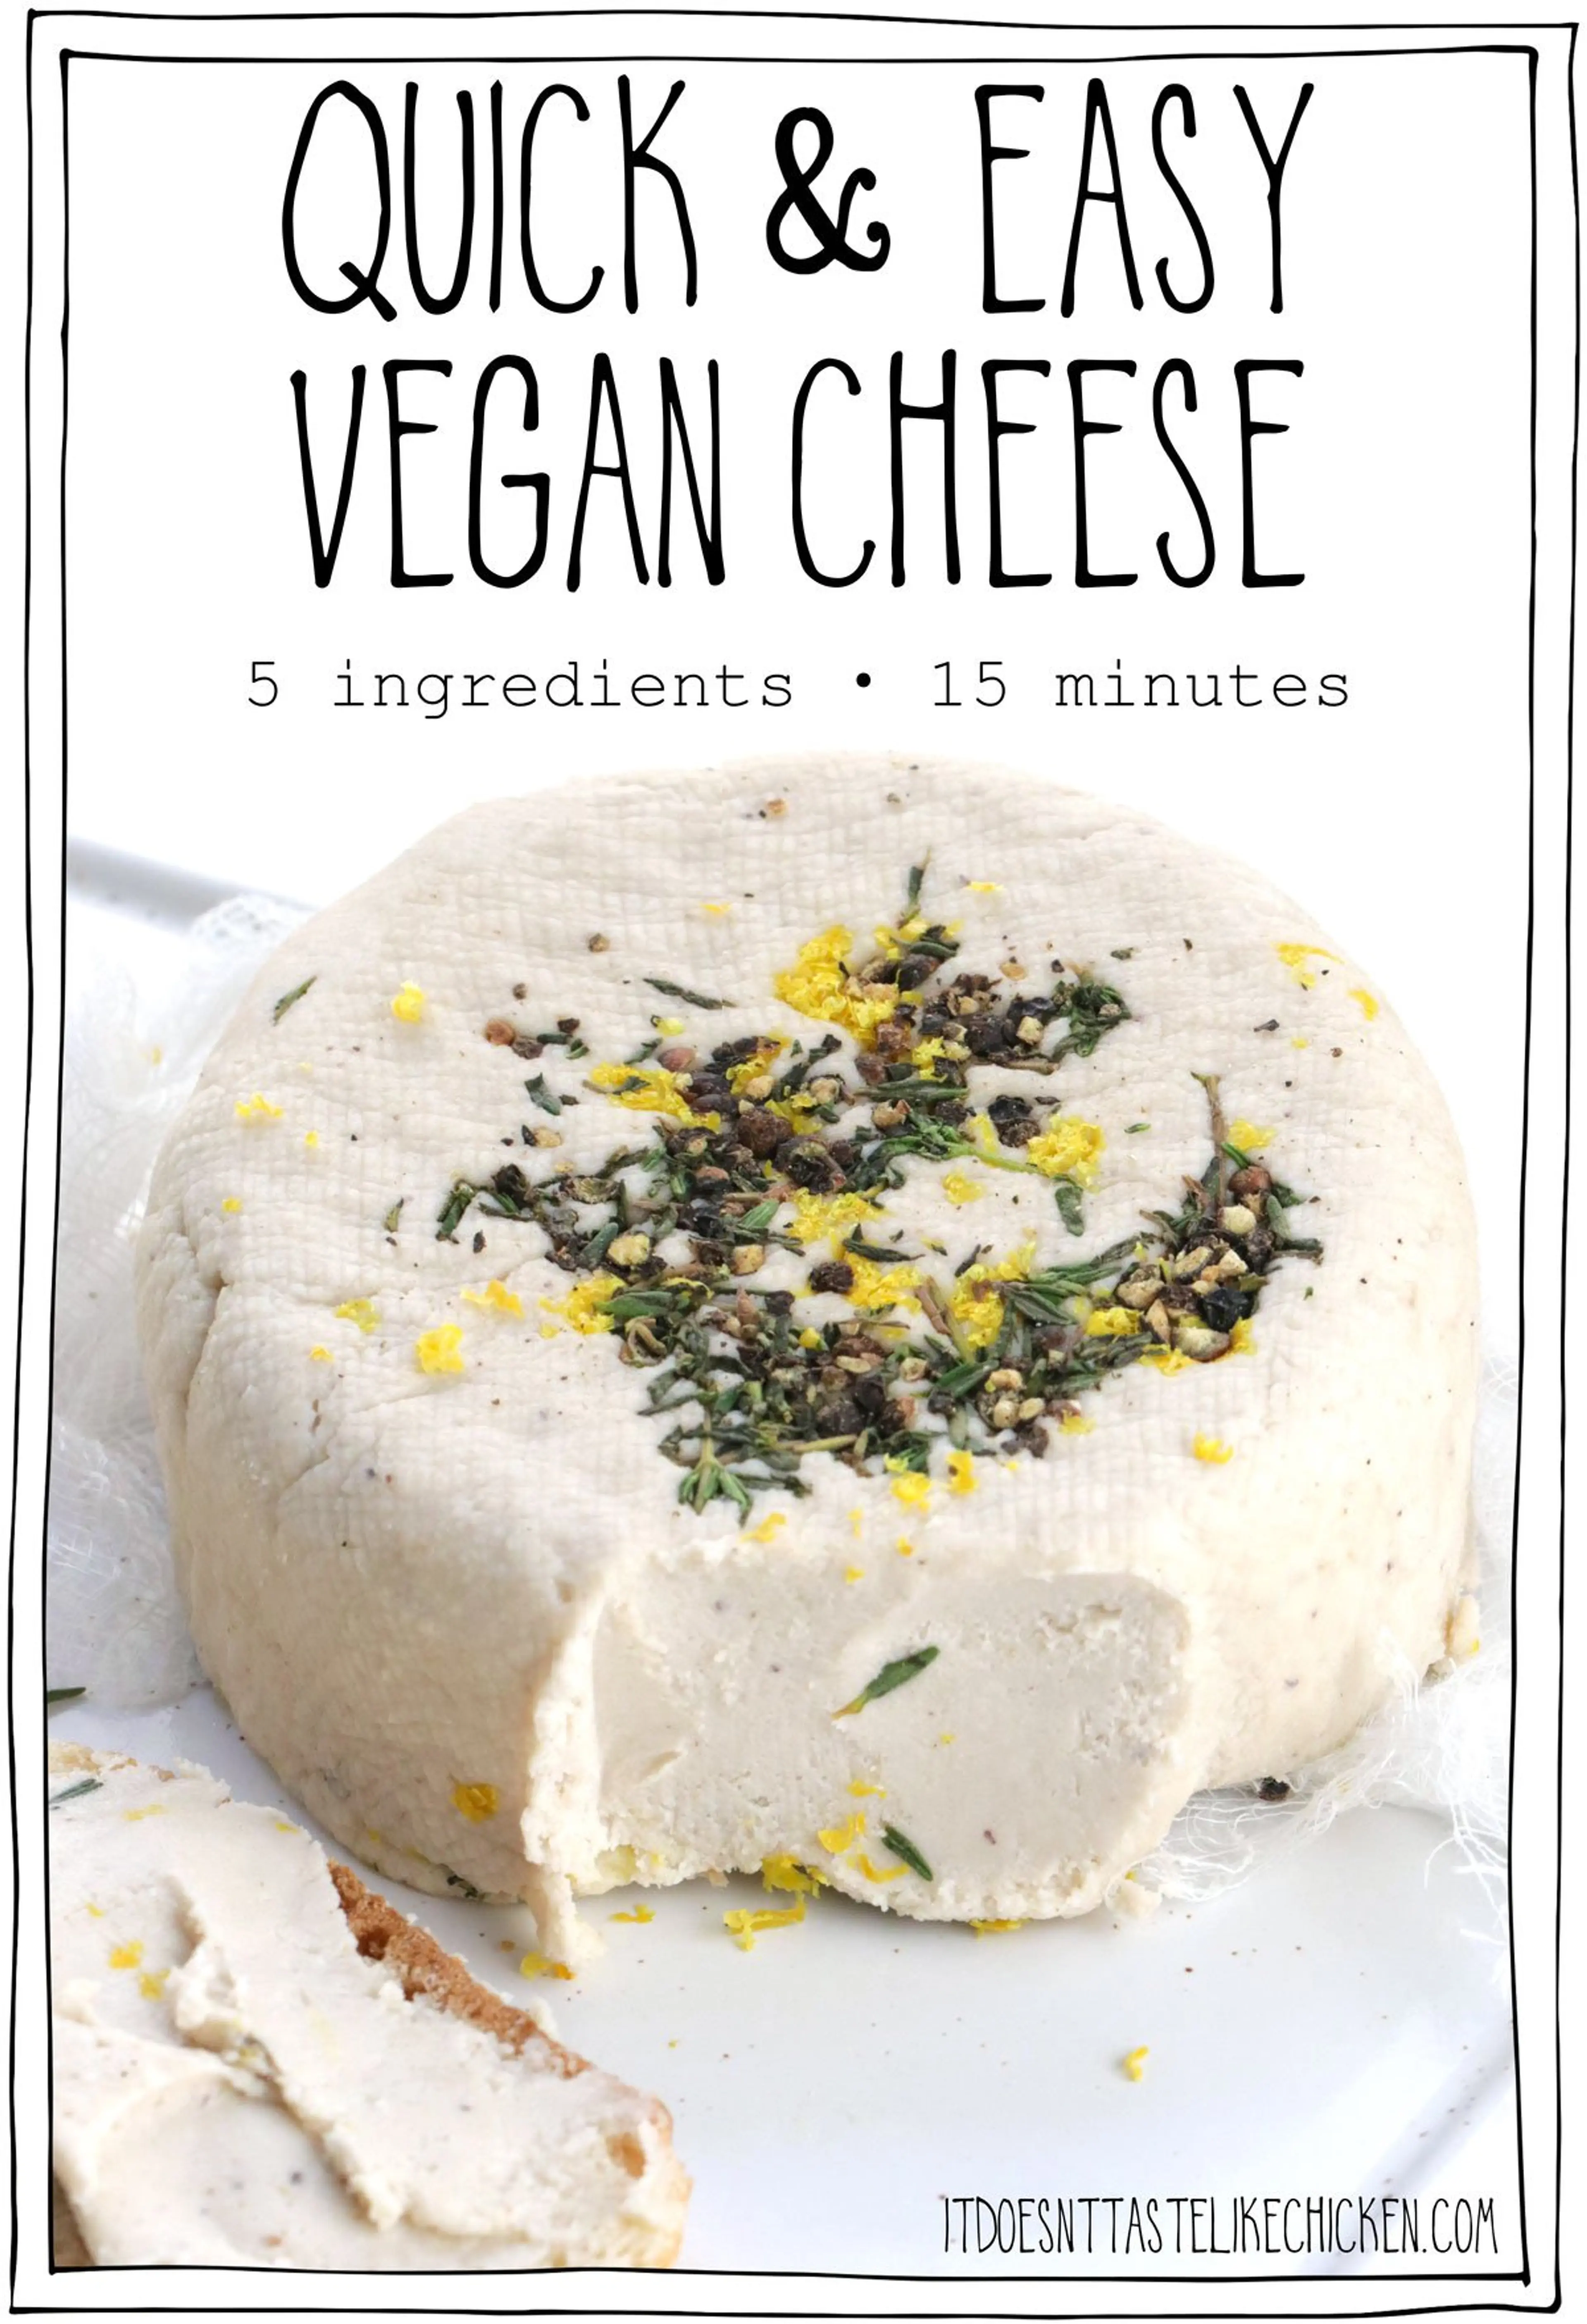 Quick & Easy Vegan Cheese